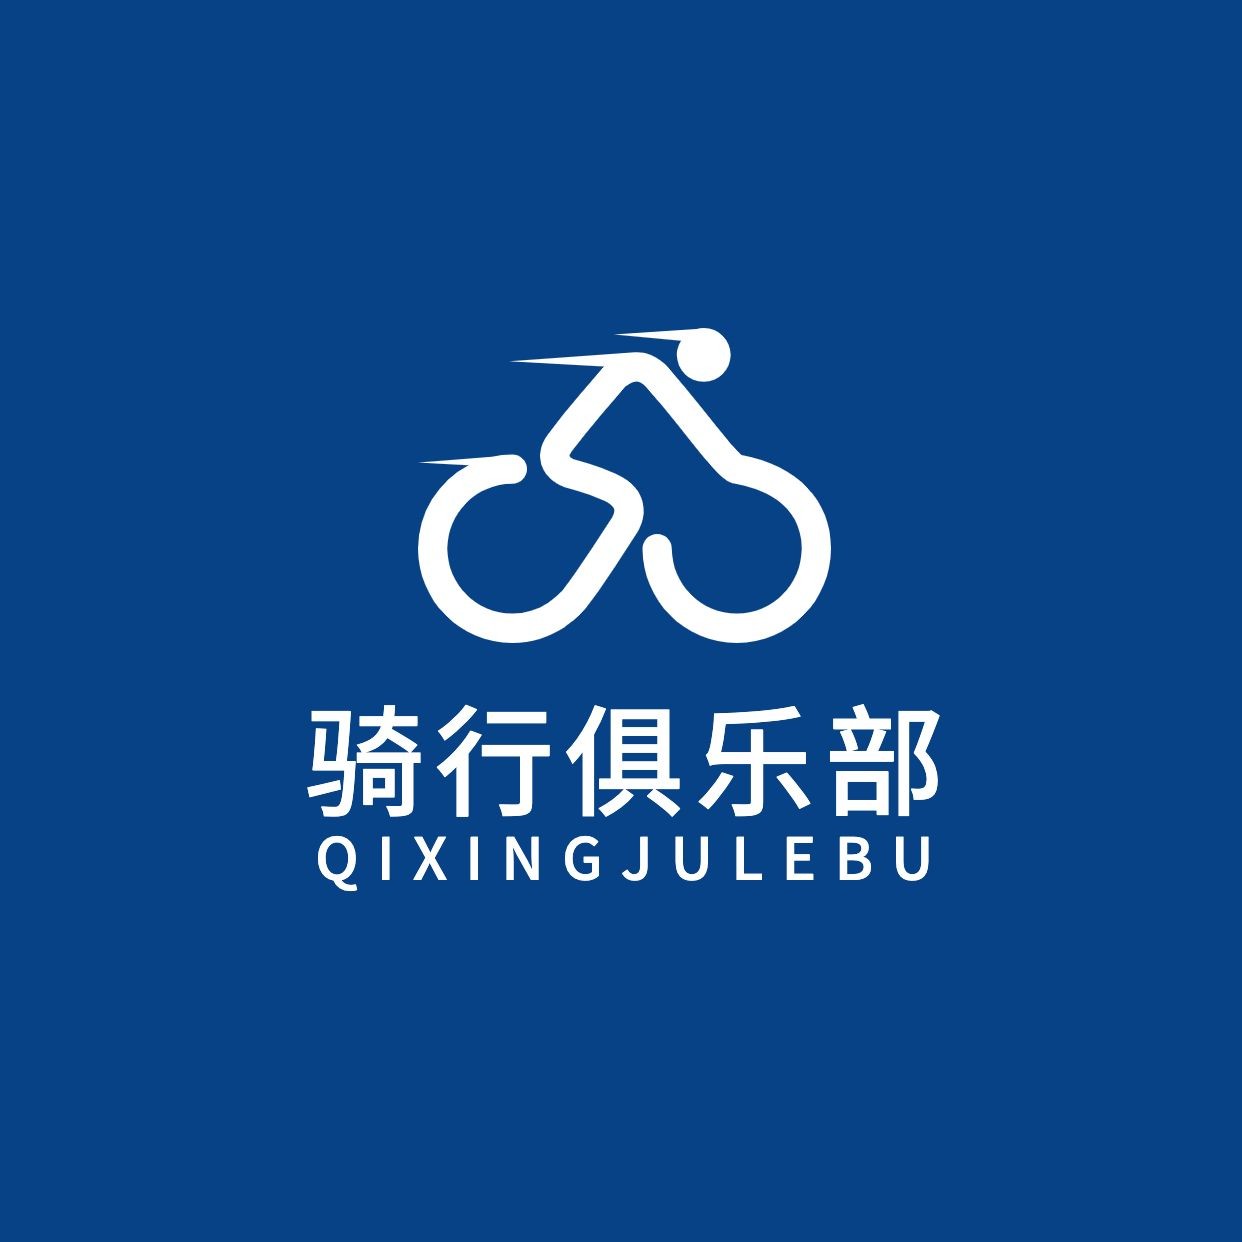 旅游公益自行车俱乐部logo设计预览效果